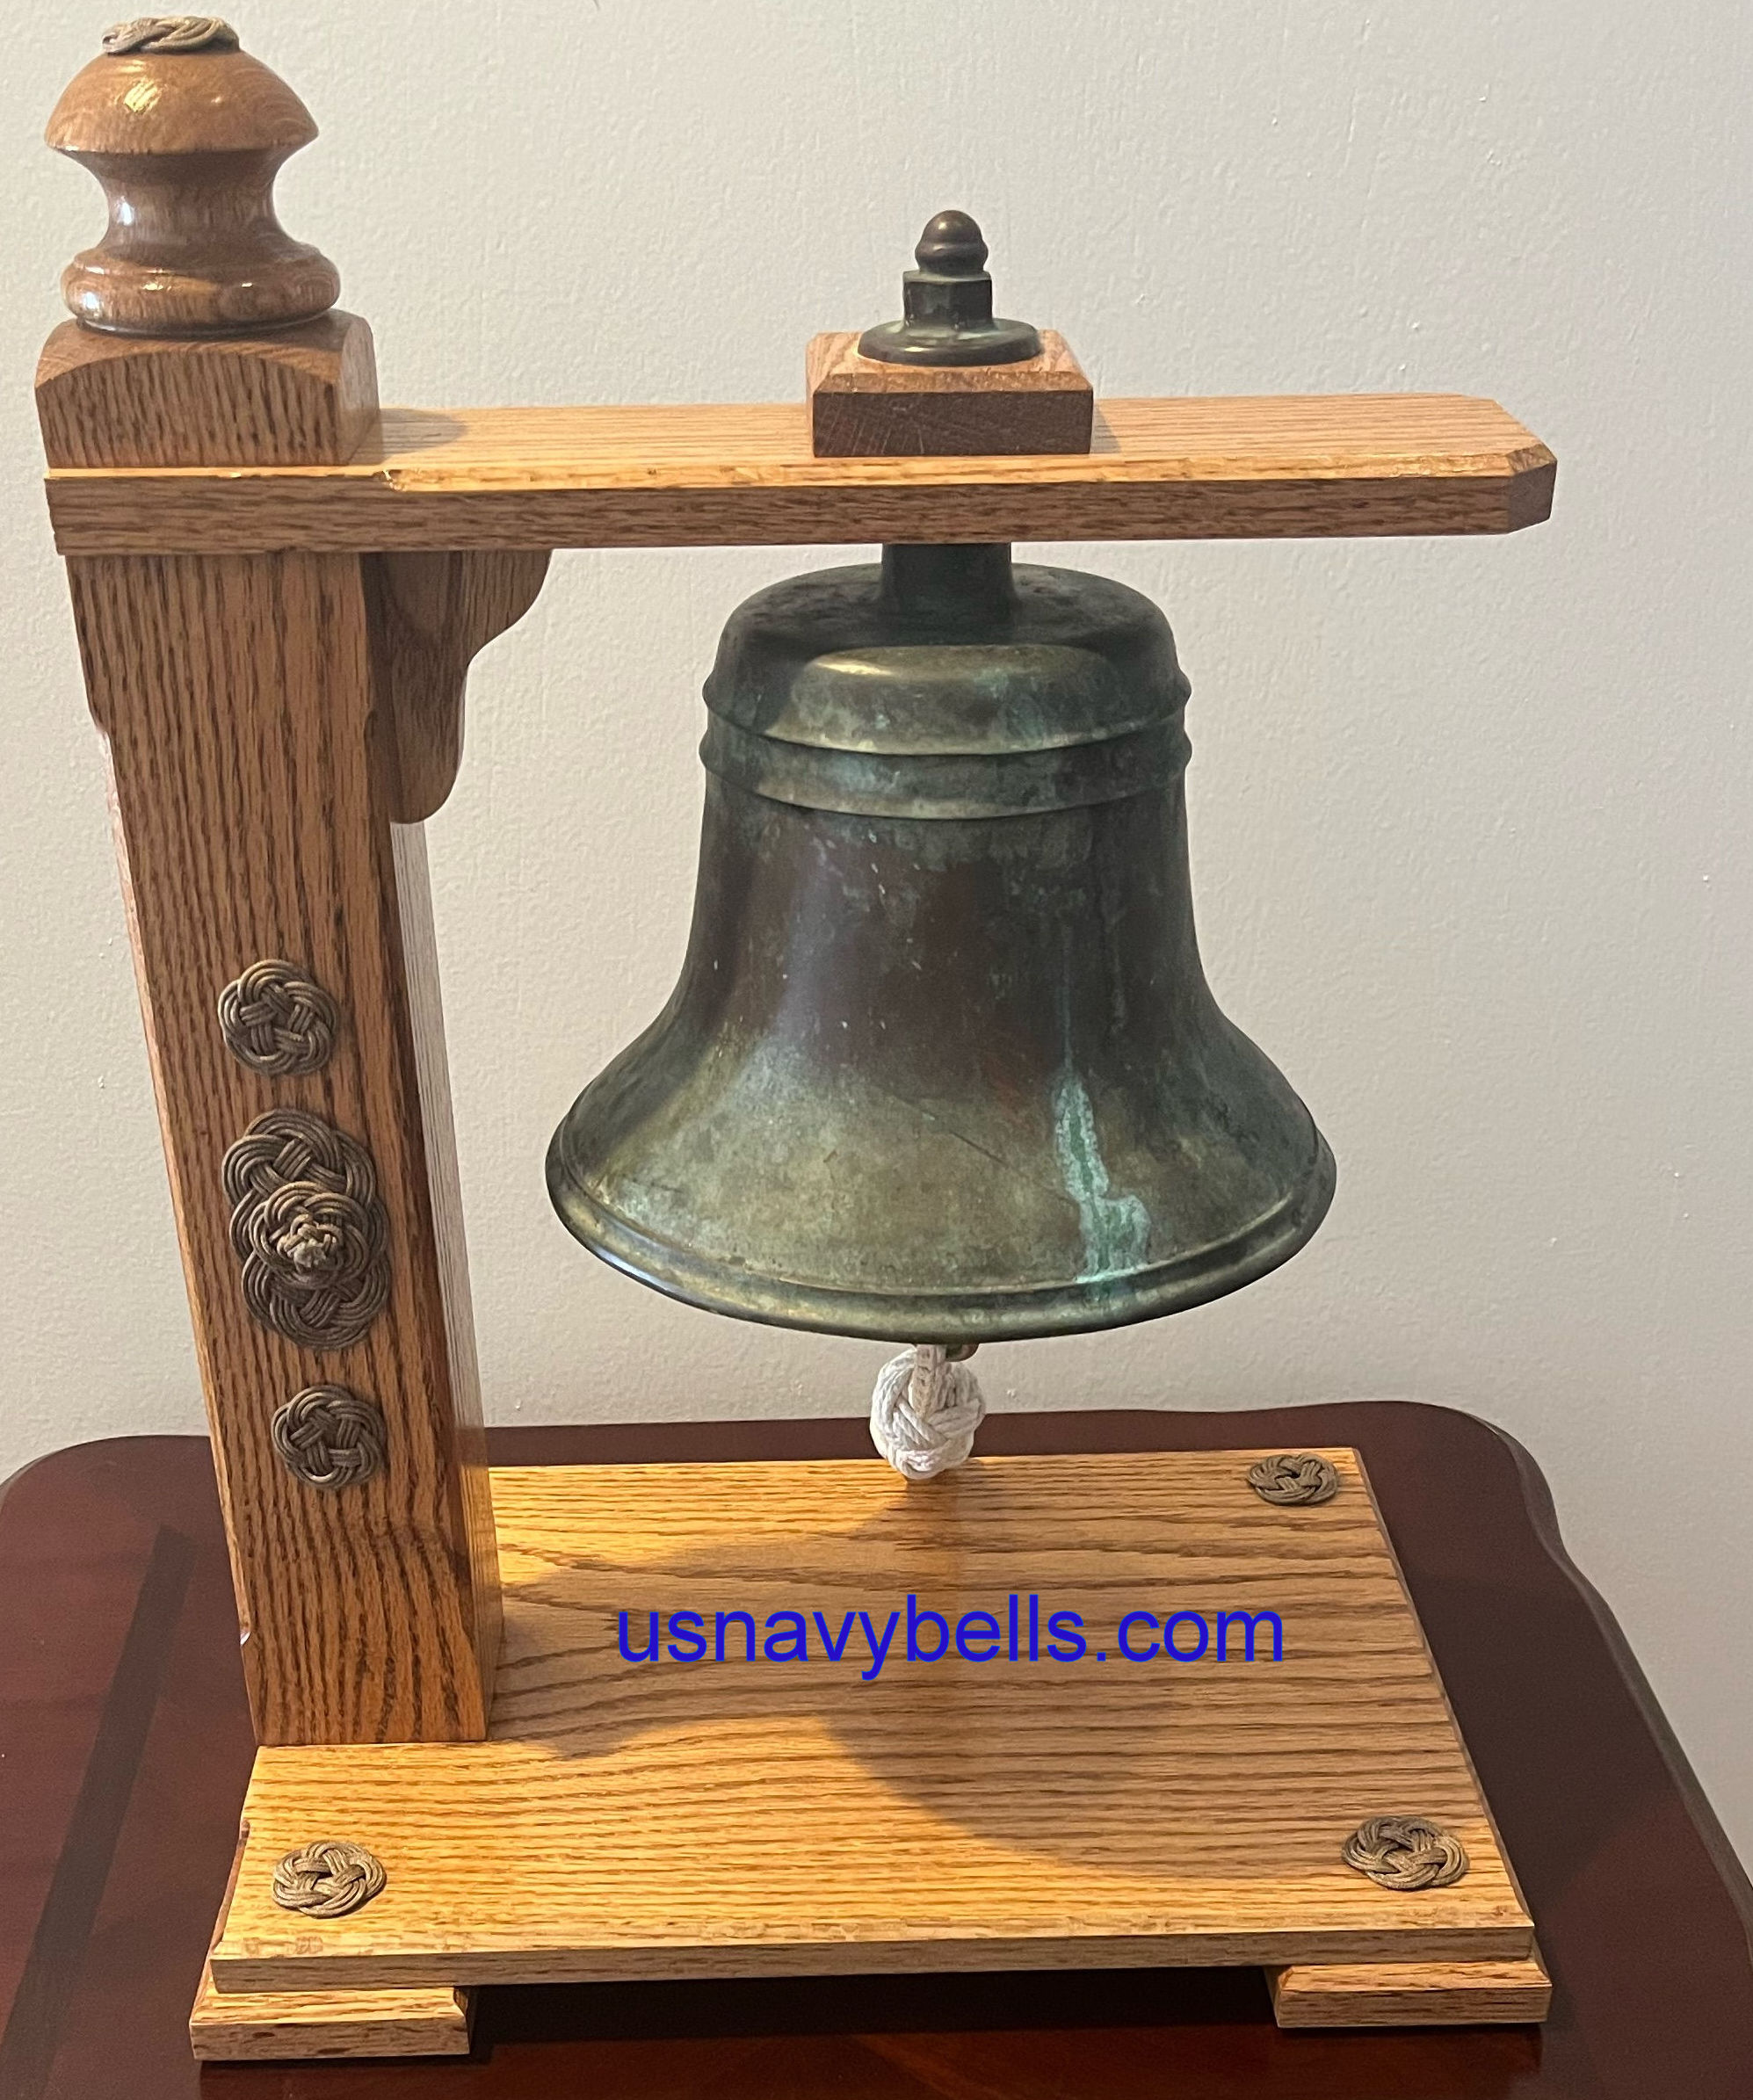 Navy Brass Bell 